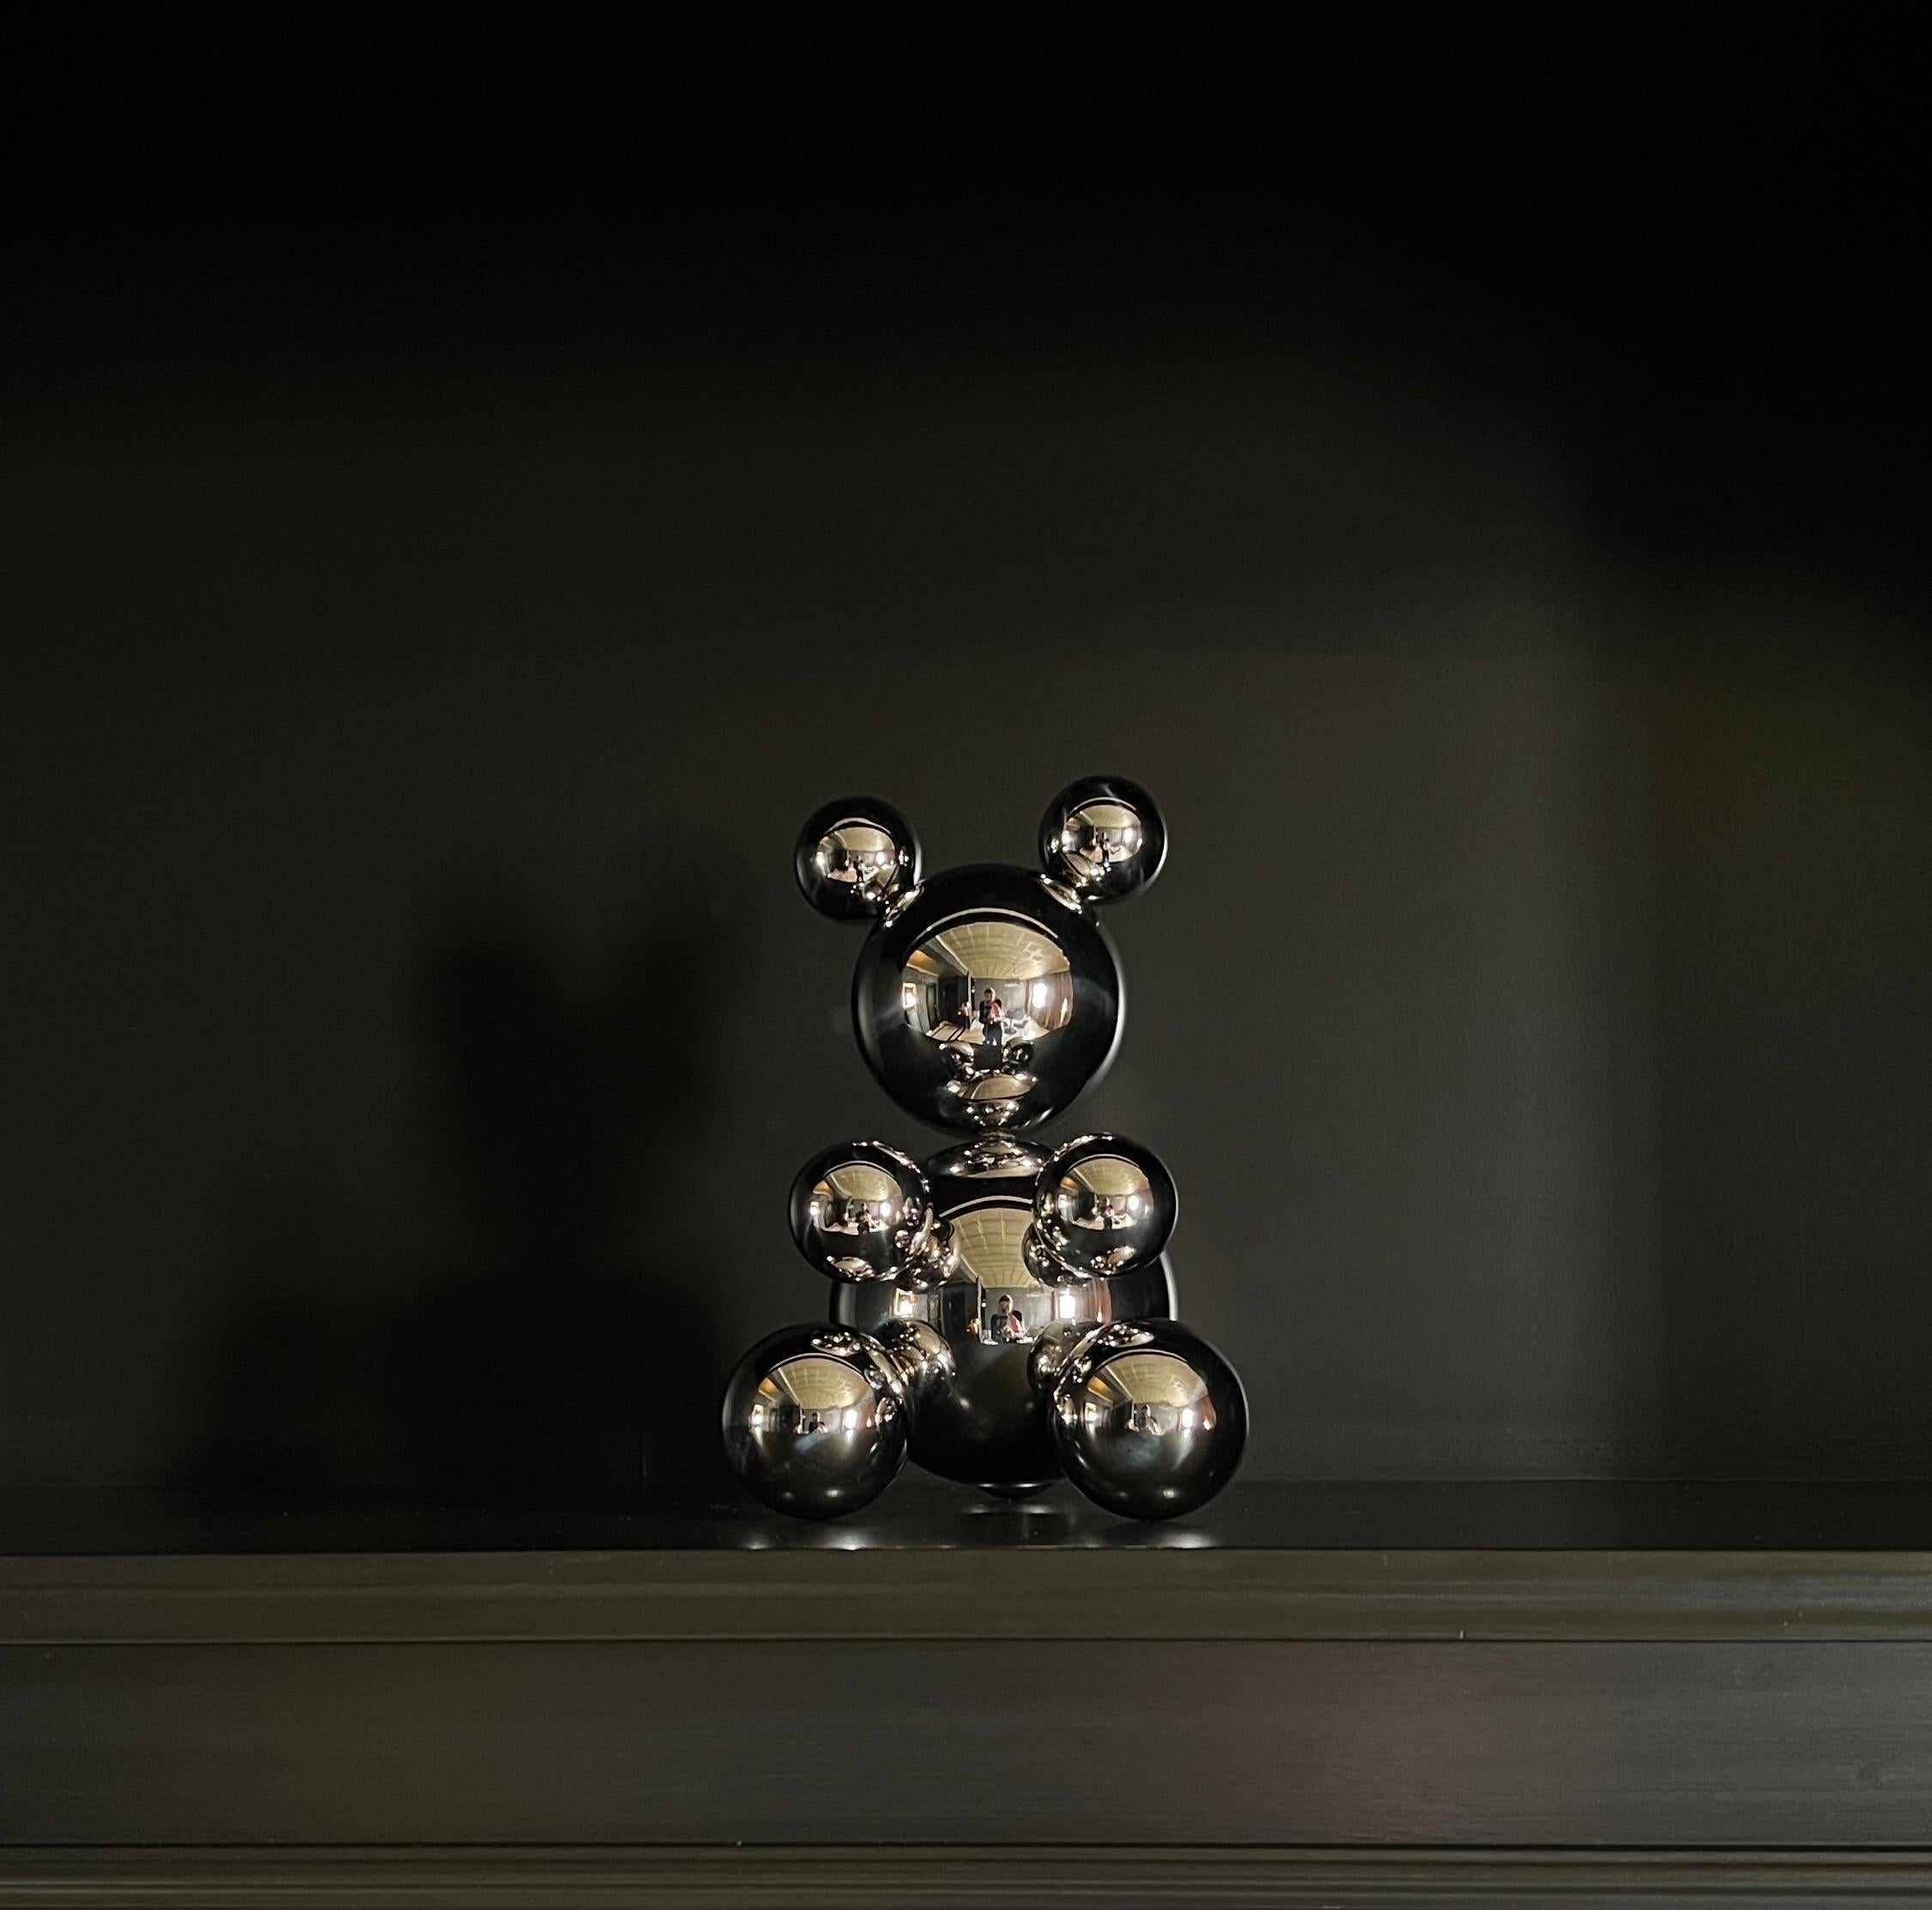 Small Stainless Steel Bear 'Sophia' Sculpture Minimalistic Animal 2